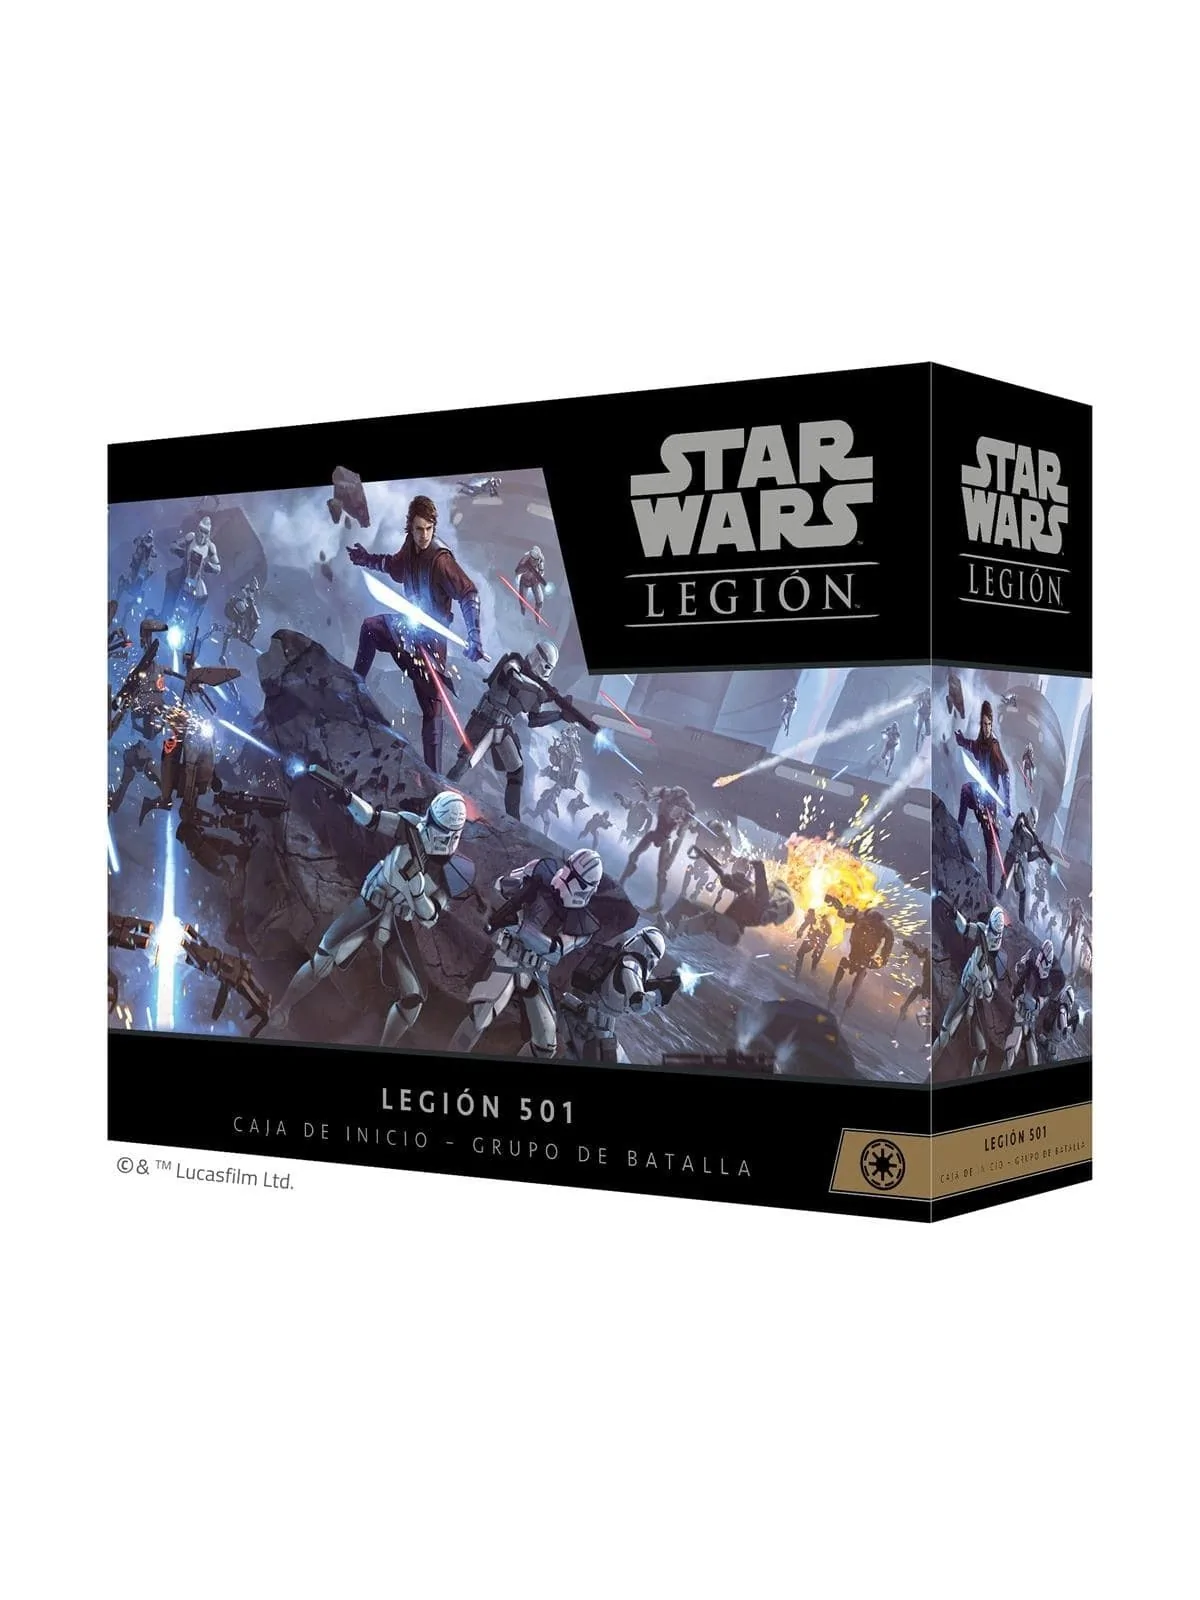 Comprar Star Wars Legion: Legión 501 barato al mejor precio 134,99 € d